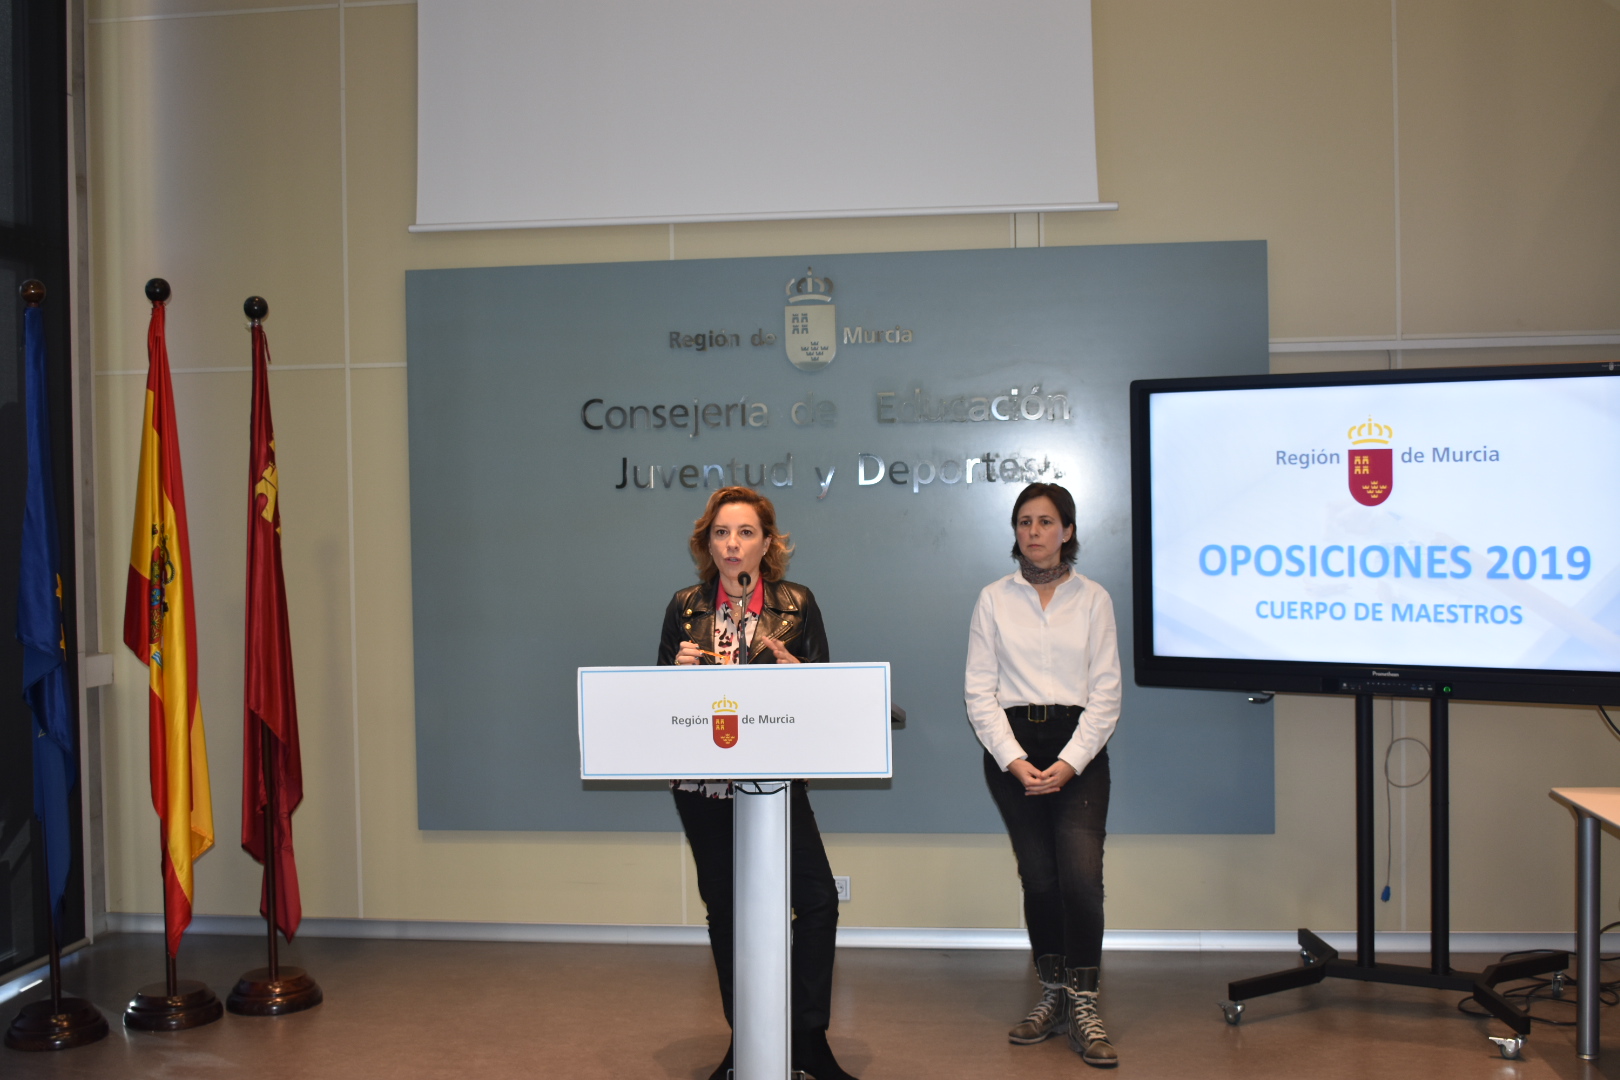 Martínez-Cachá informa sobre la convocatoria de Oposiciones al Cuerpo de Maestros en la Región de Murcia